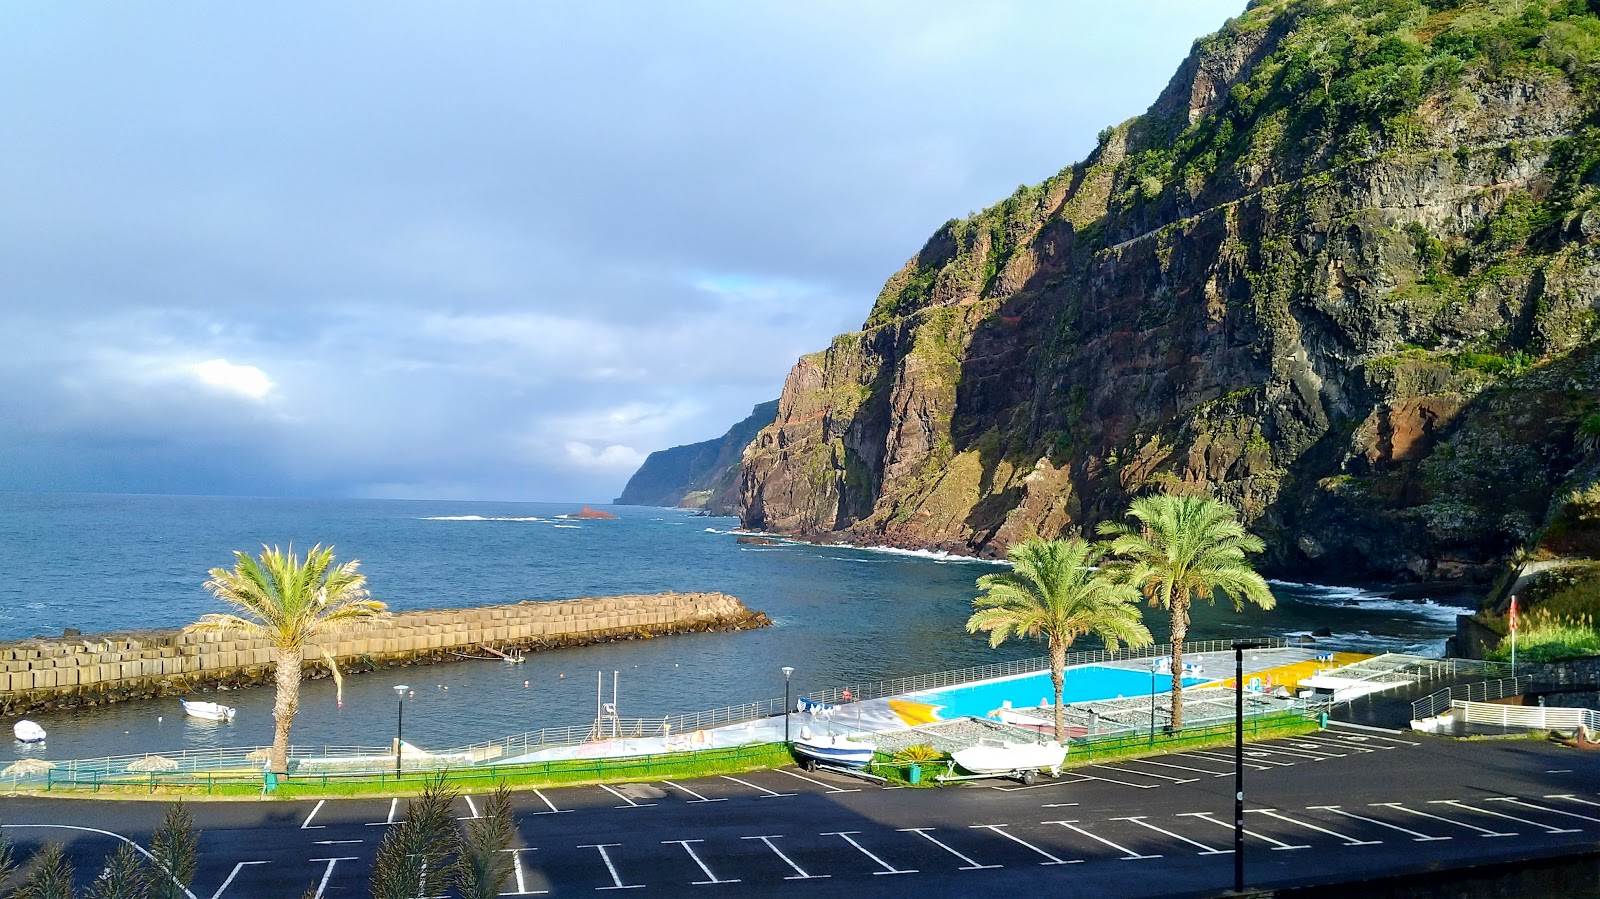 Foto af Piscinas de Ponta Delgada med turkis rent vand overflade